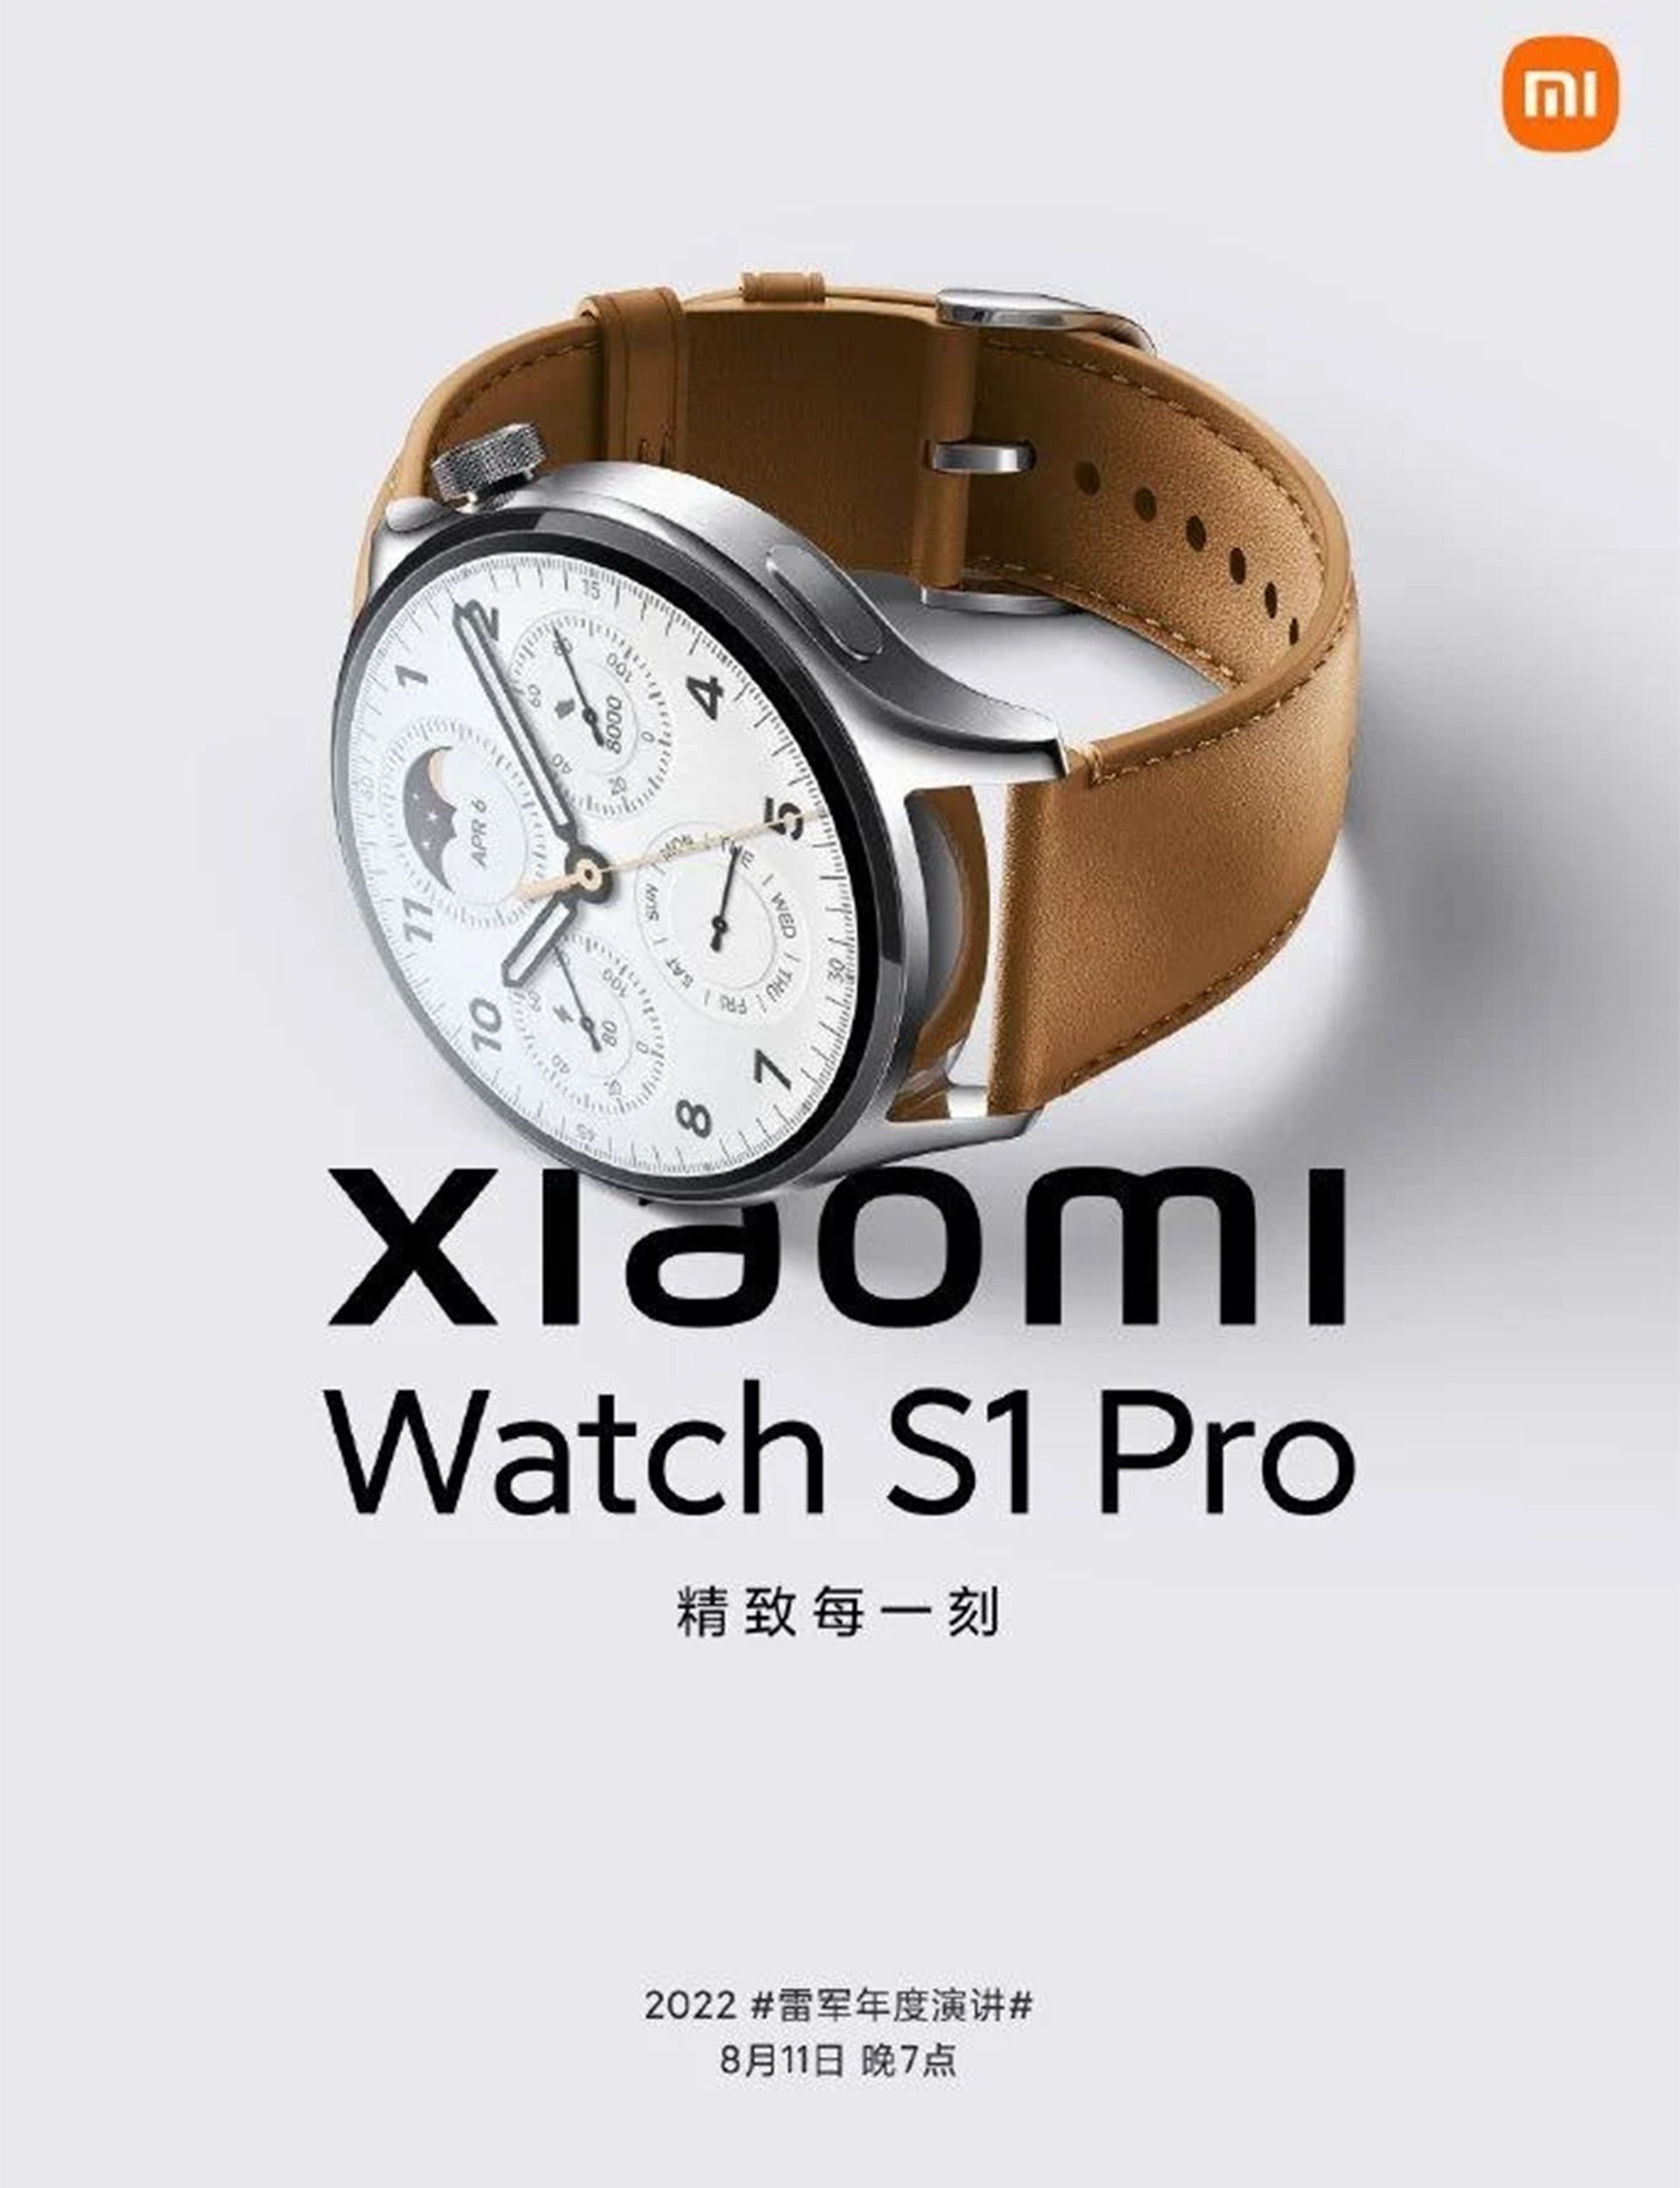 پوستر تبلیعاتی ساعت هوشمند شیائومی S1 Pro